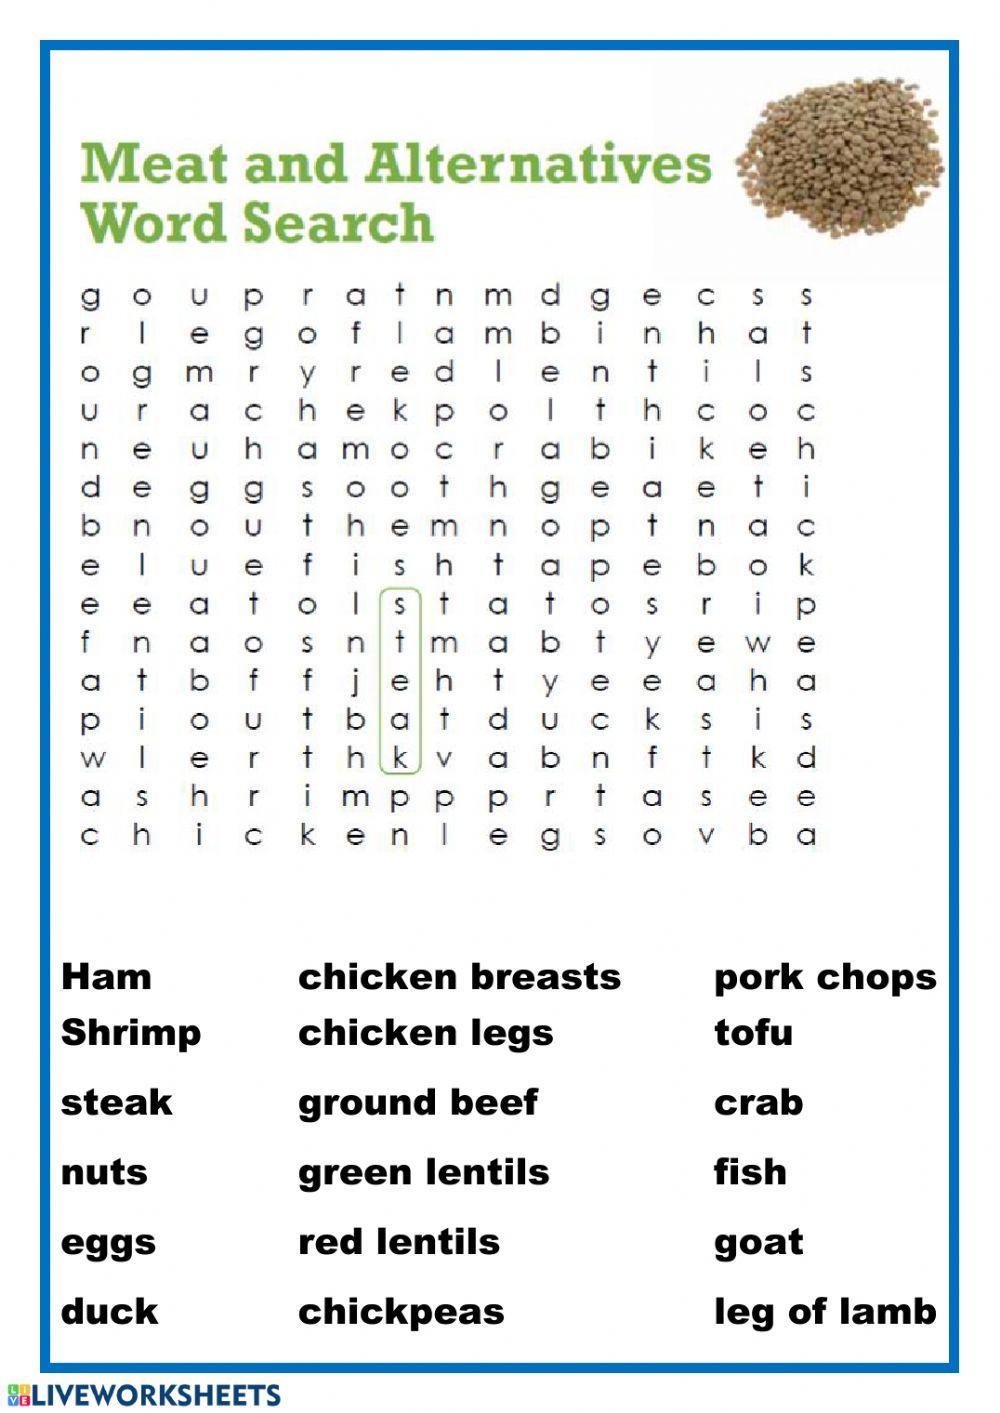 Meat alternatives wordsearch